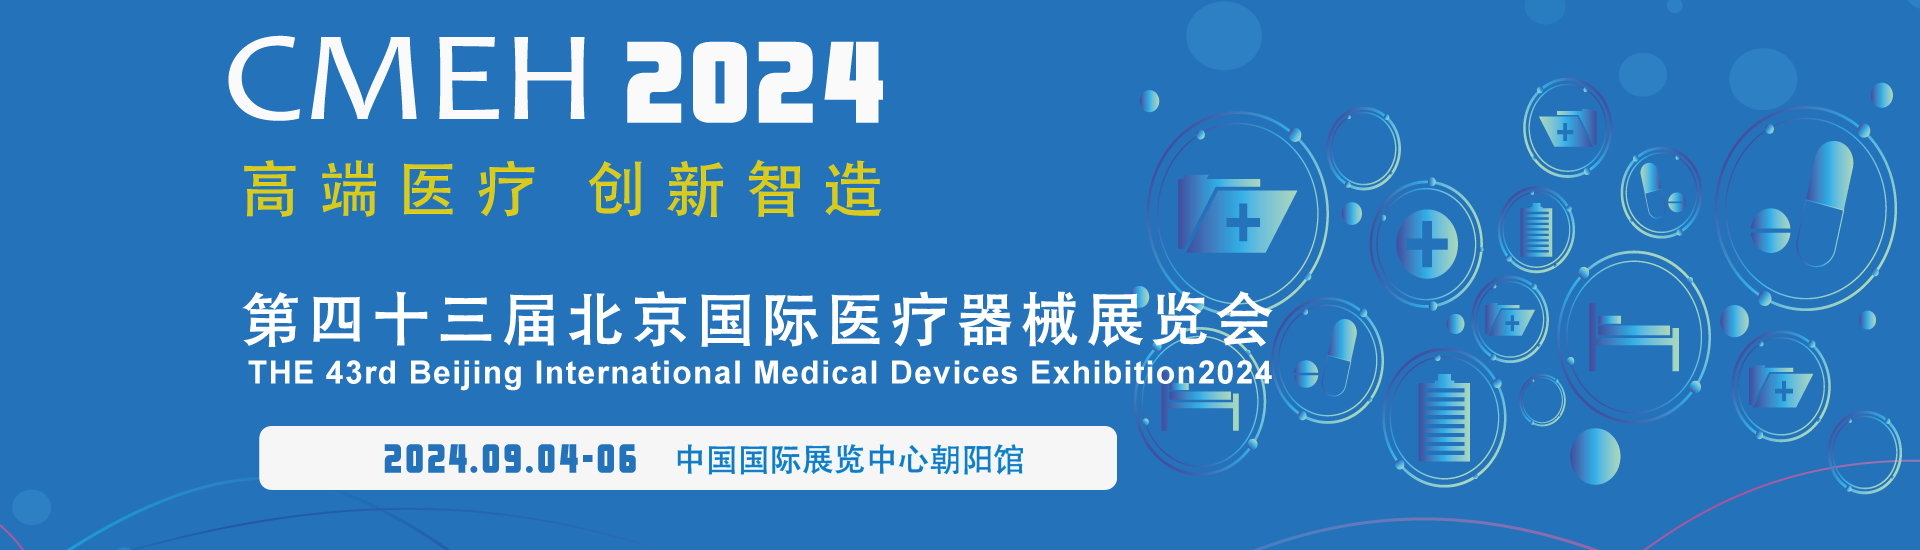 北京推出政策红包“滋养”医疗器械创新生态 培育新质生产力